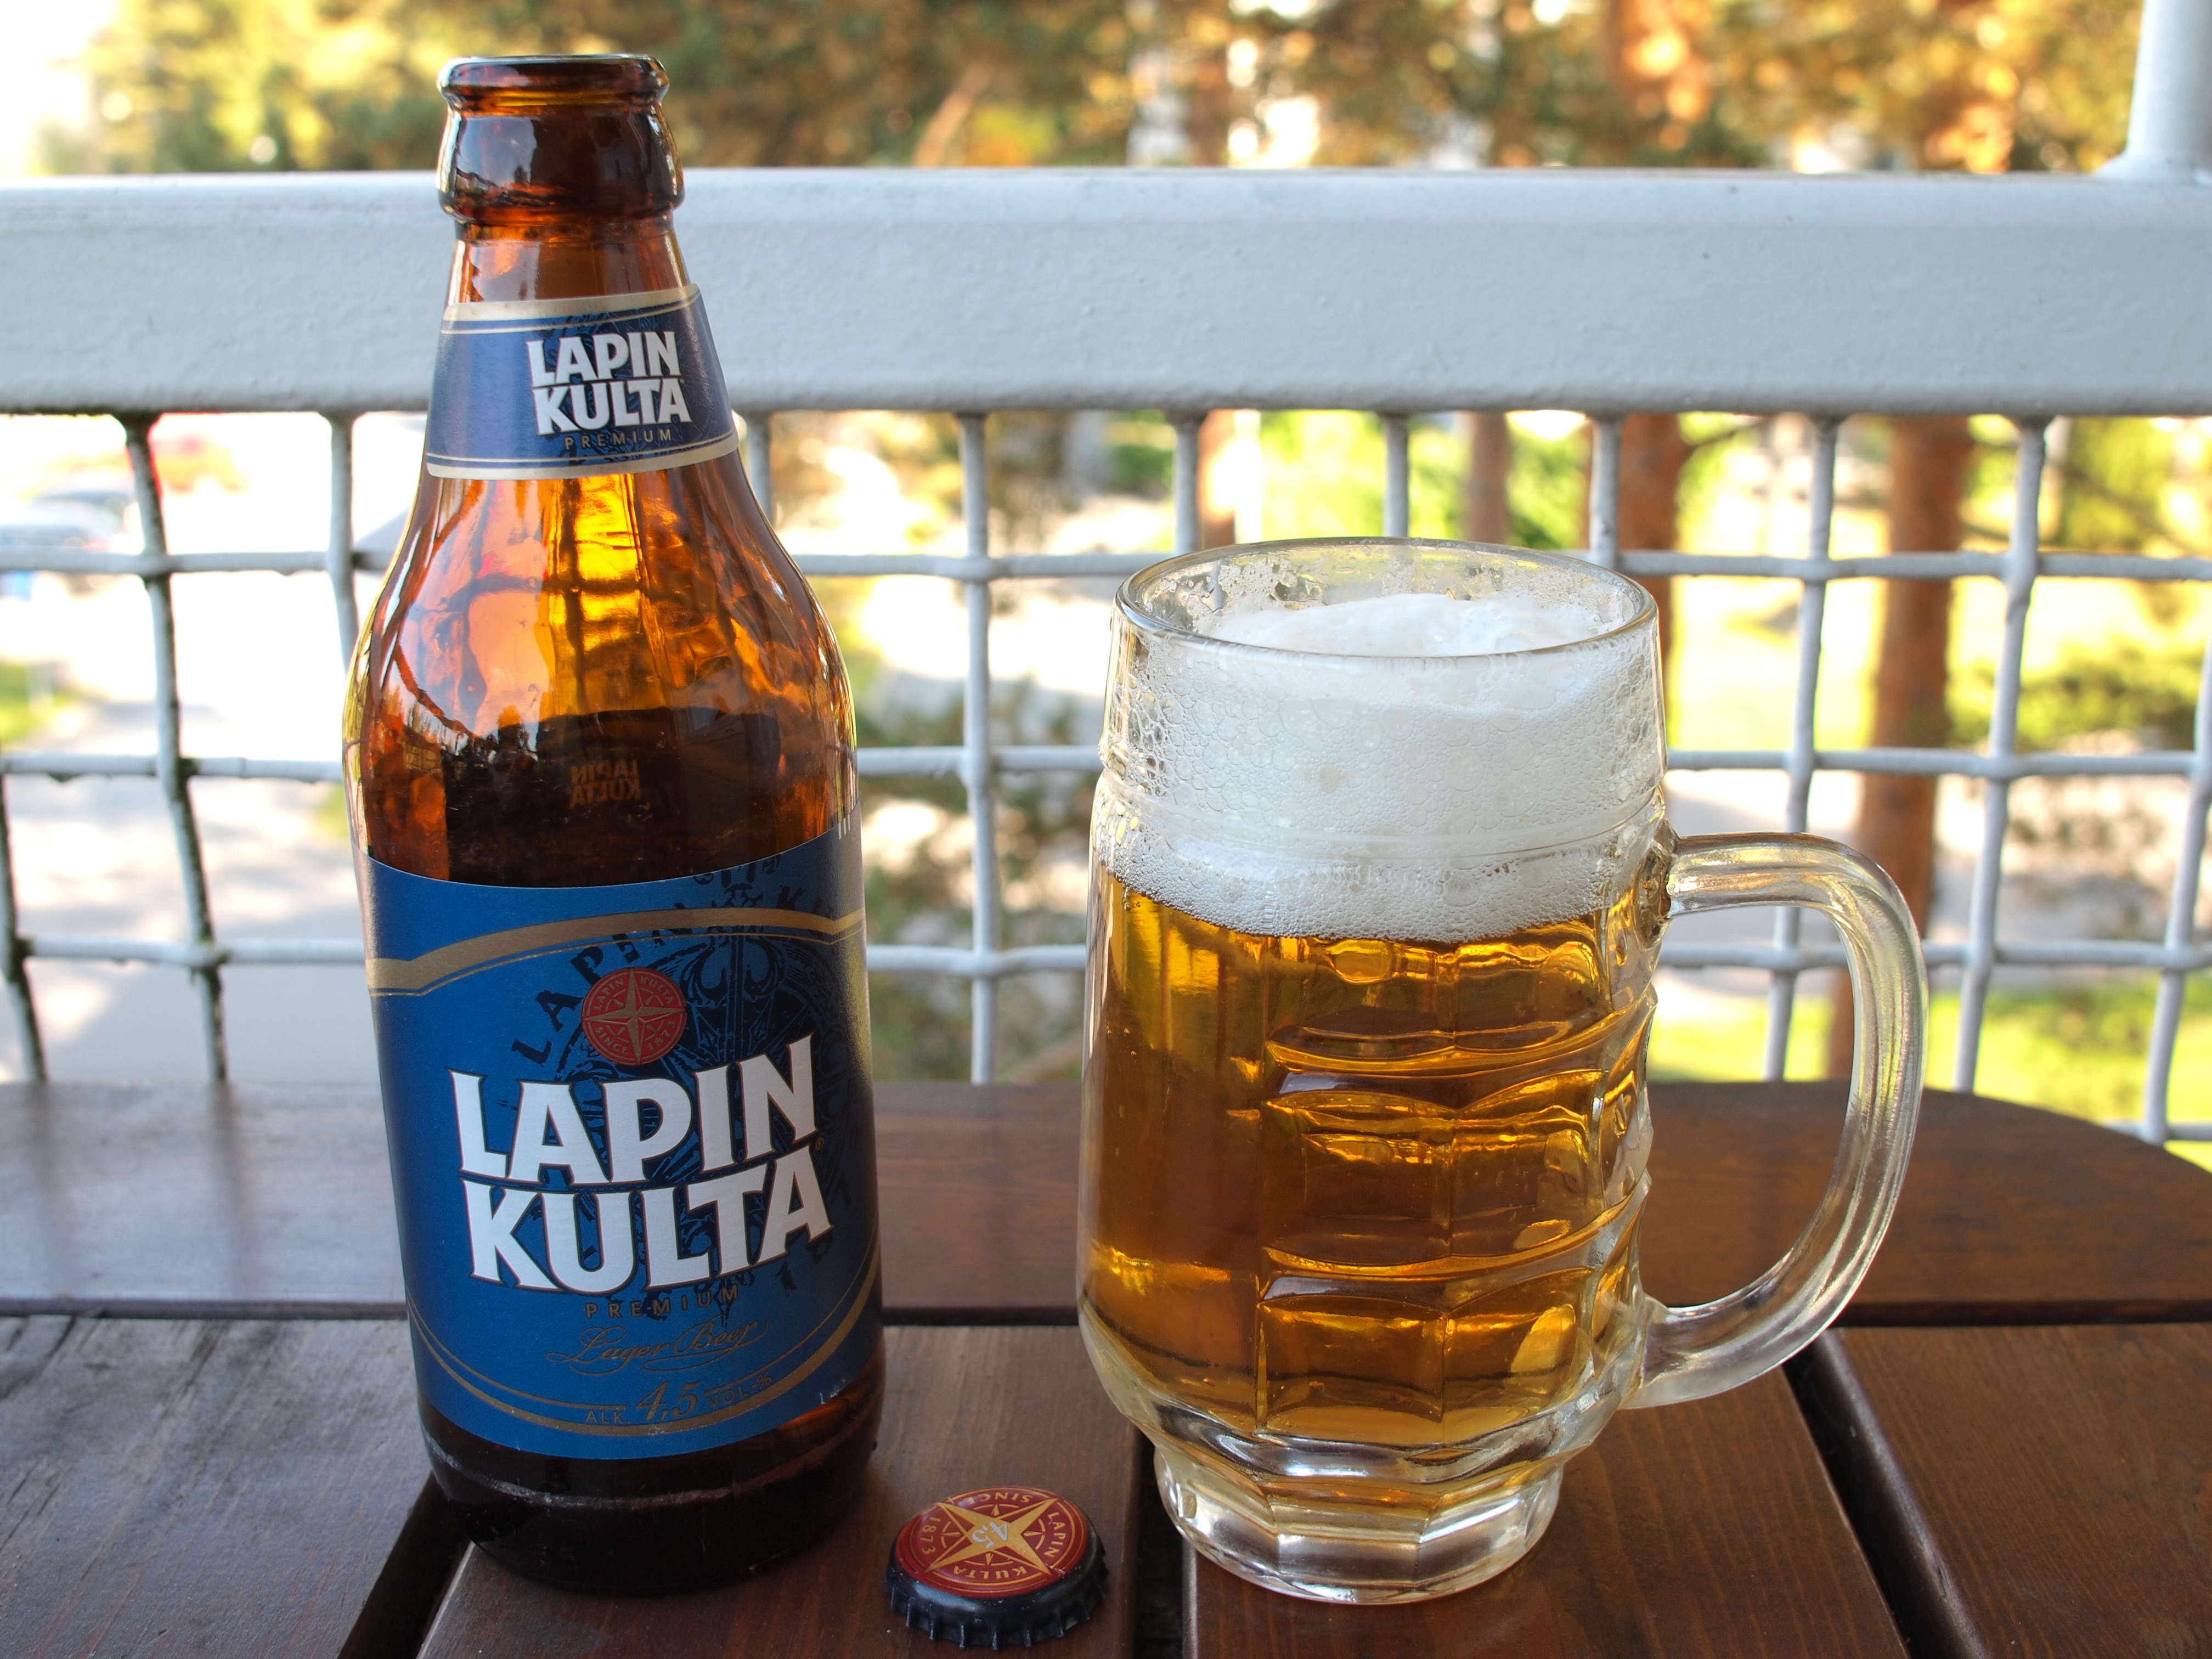 Пивоварня лапина. Пиво финское Лапин культа. Финское пиво Lapin kulta. Финское пиво Karhu. Лапин культа пиво стекло.